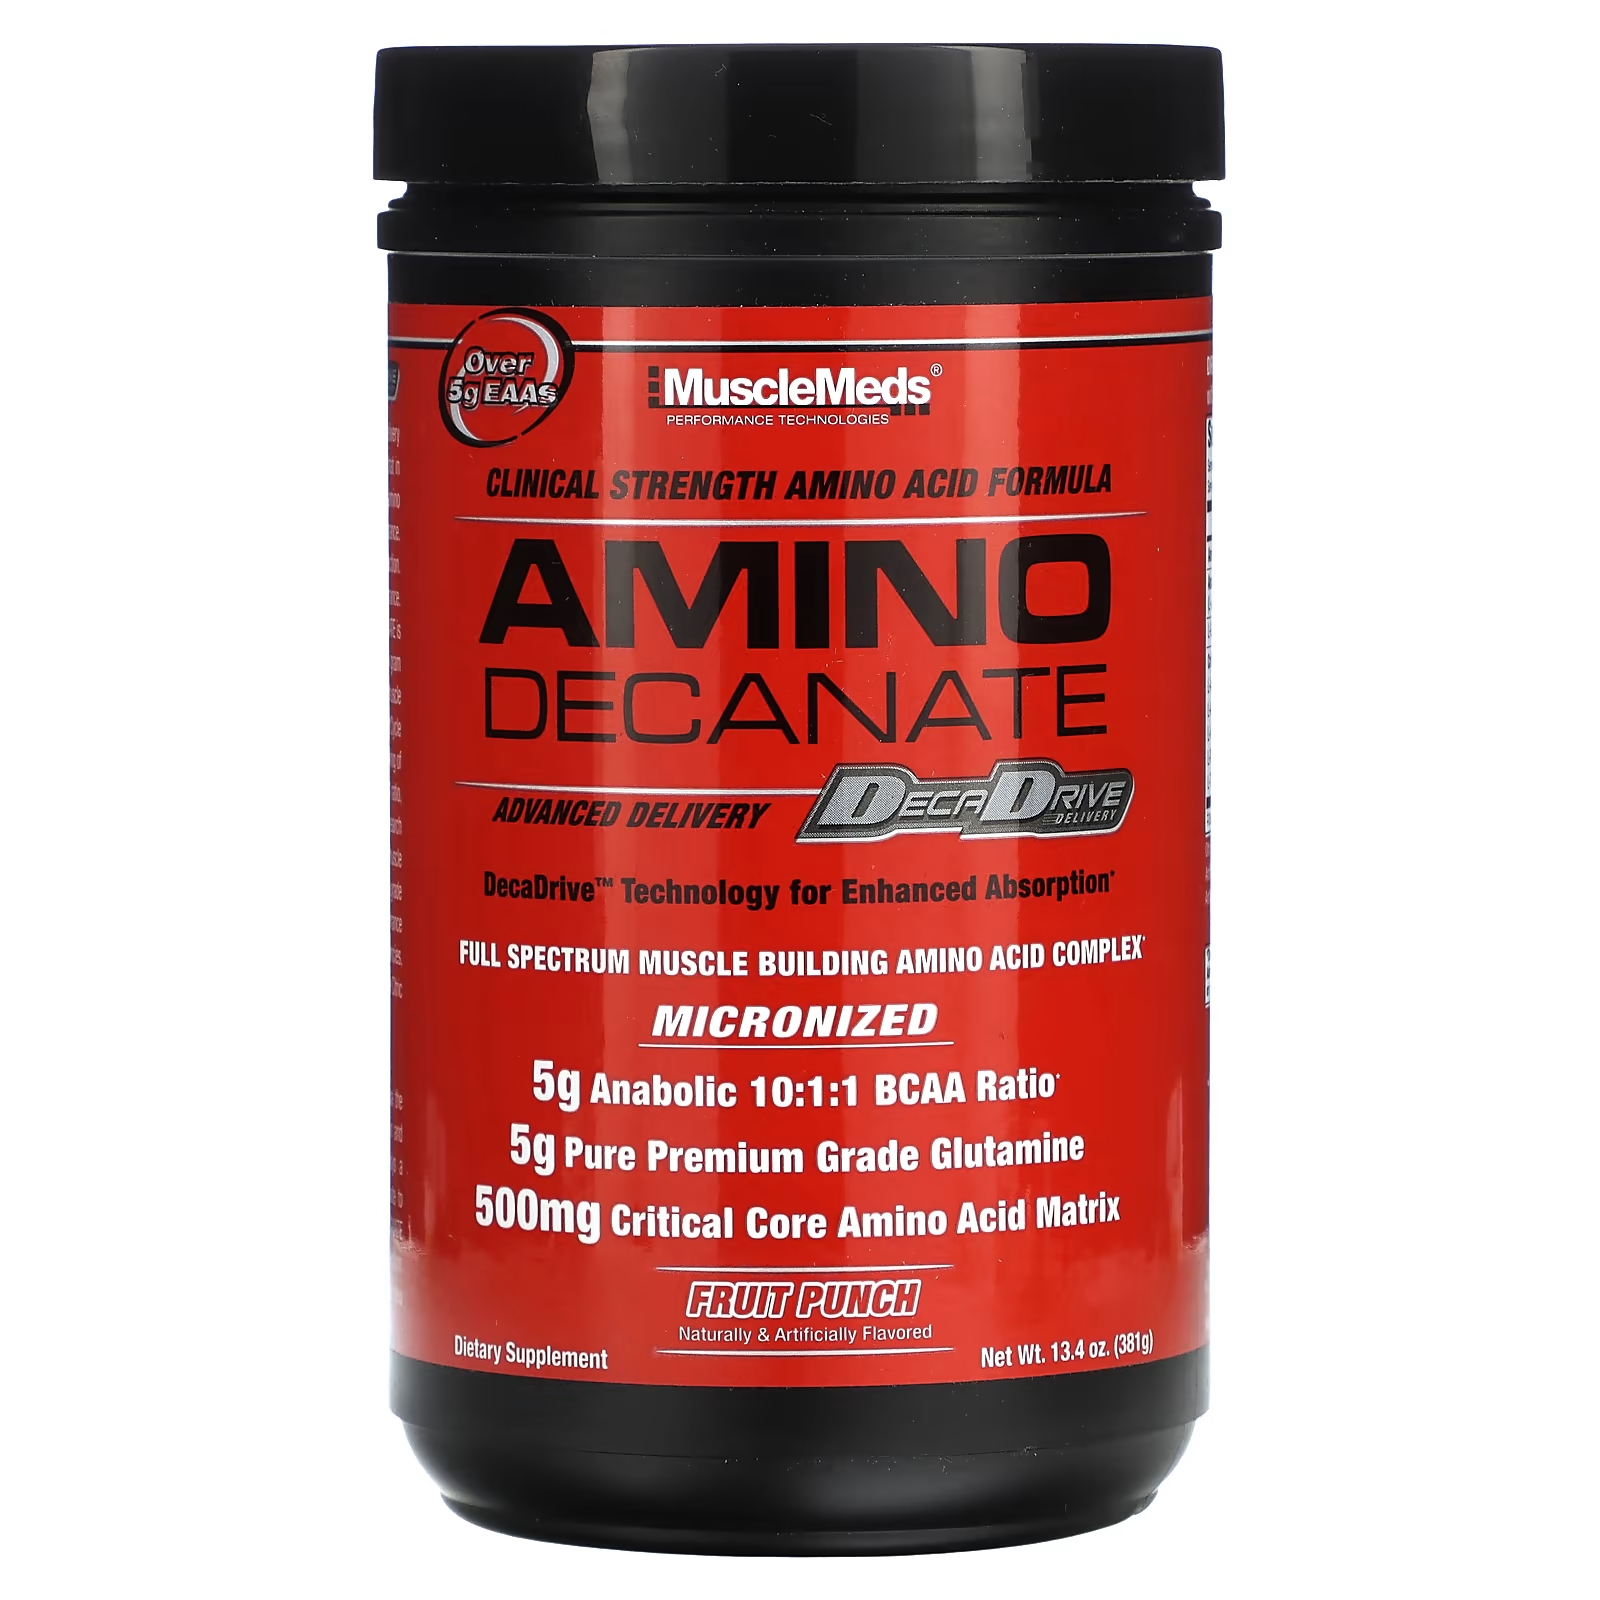 аминокислотный комплекс fuelup amino up 600 mg 240 порций Аминодеканат MuscleMeds, фруктовый пунш